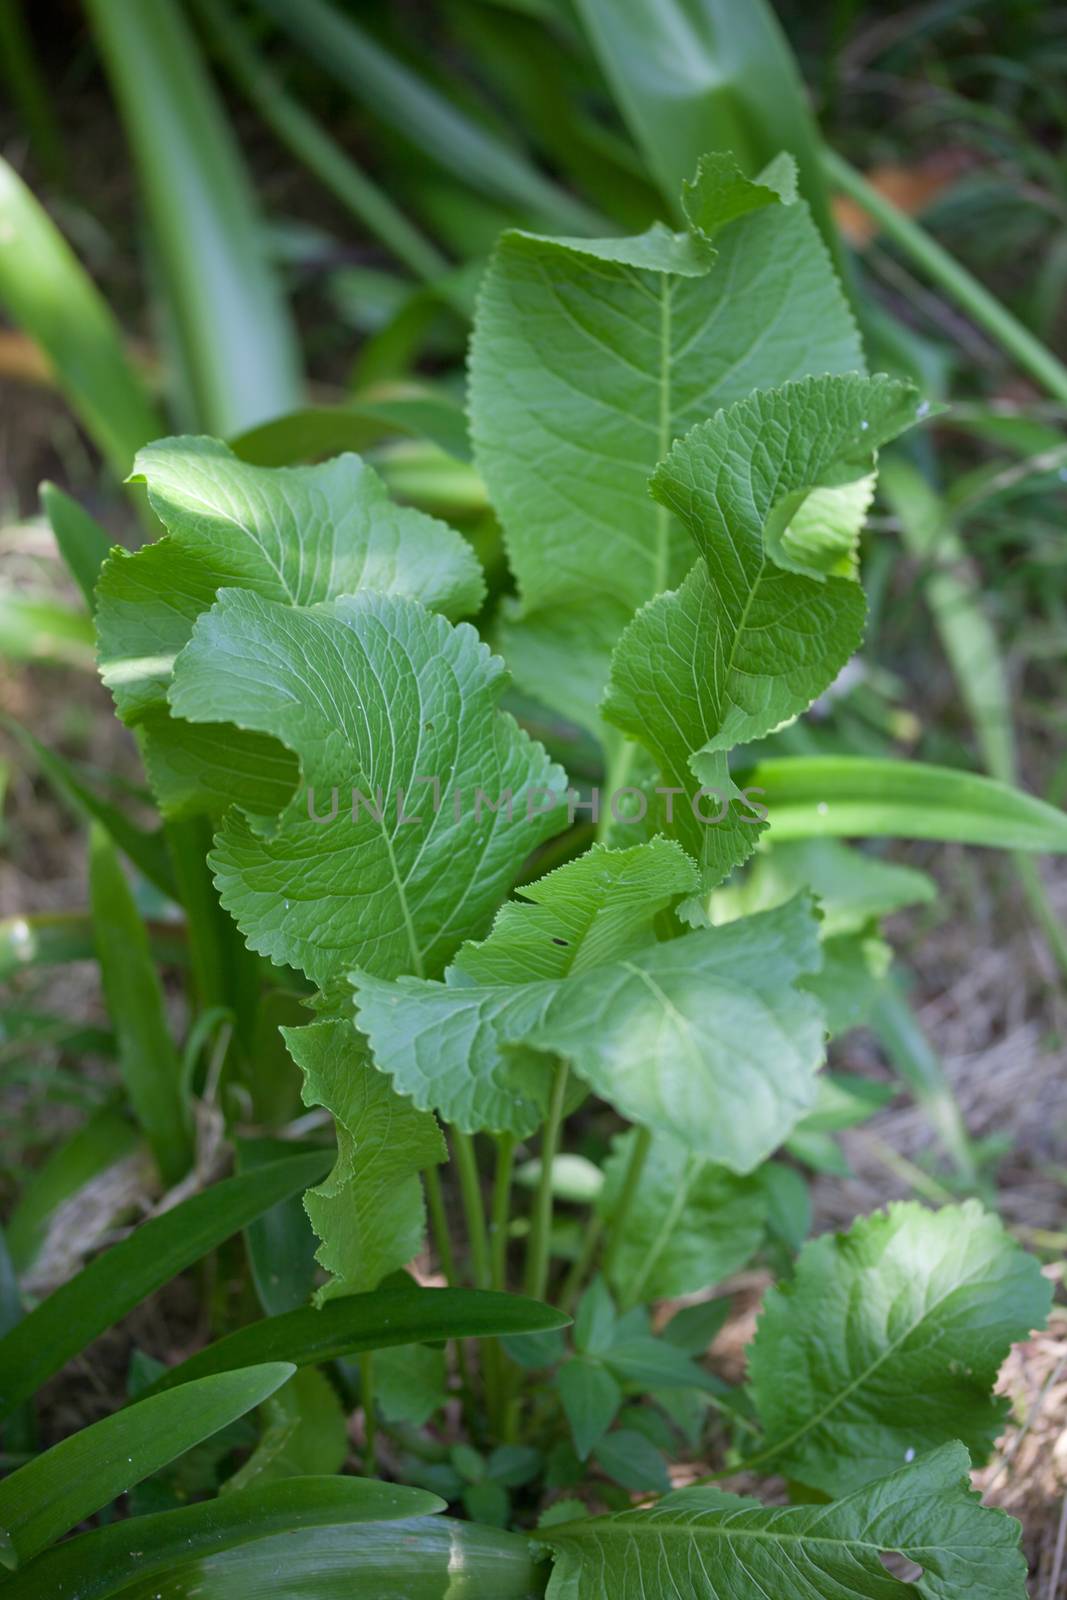 Green horseradish leaves by Angorius